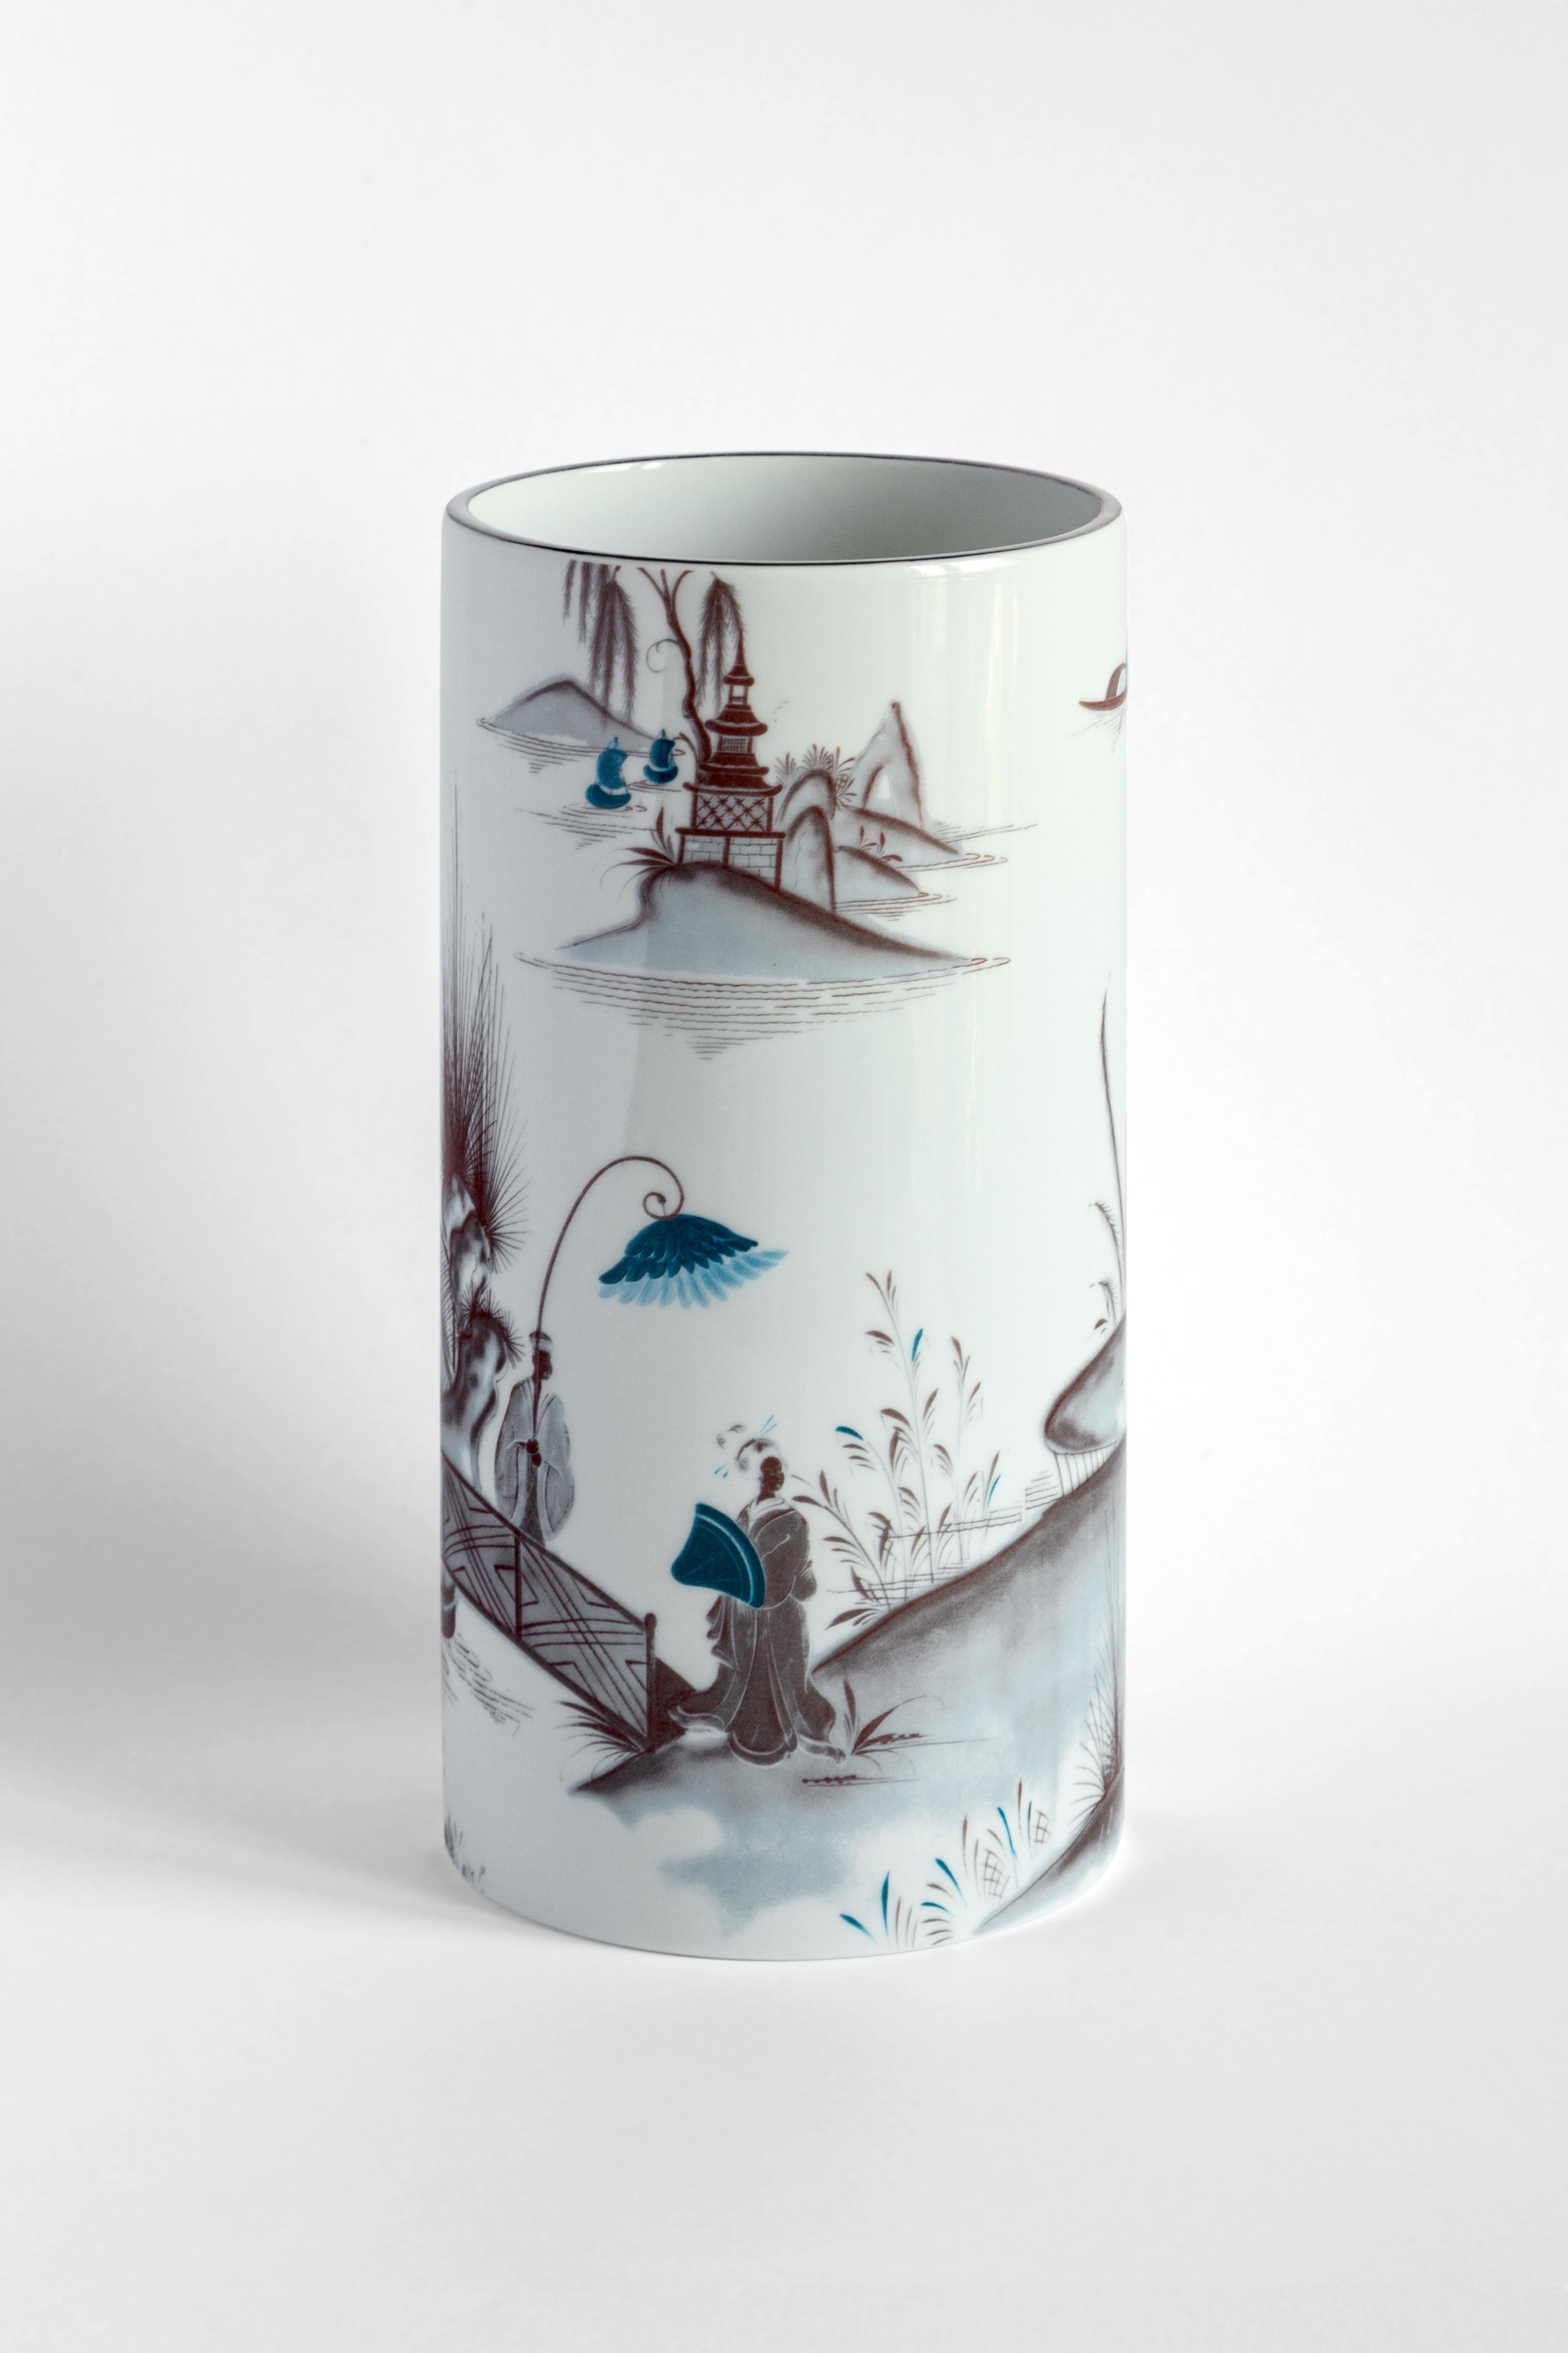 Faisant partie de la collection Grand Tour de Vito Nesta, la série d'assiettes en porcelaine Natsumi s'inspire des voyages de l'artiste autour du monde. Ce paysage japonais classique met en évidence deux personnages marchant sur un pont au bord d'un